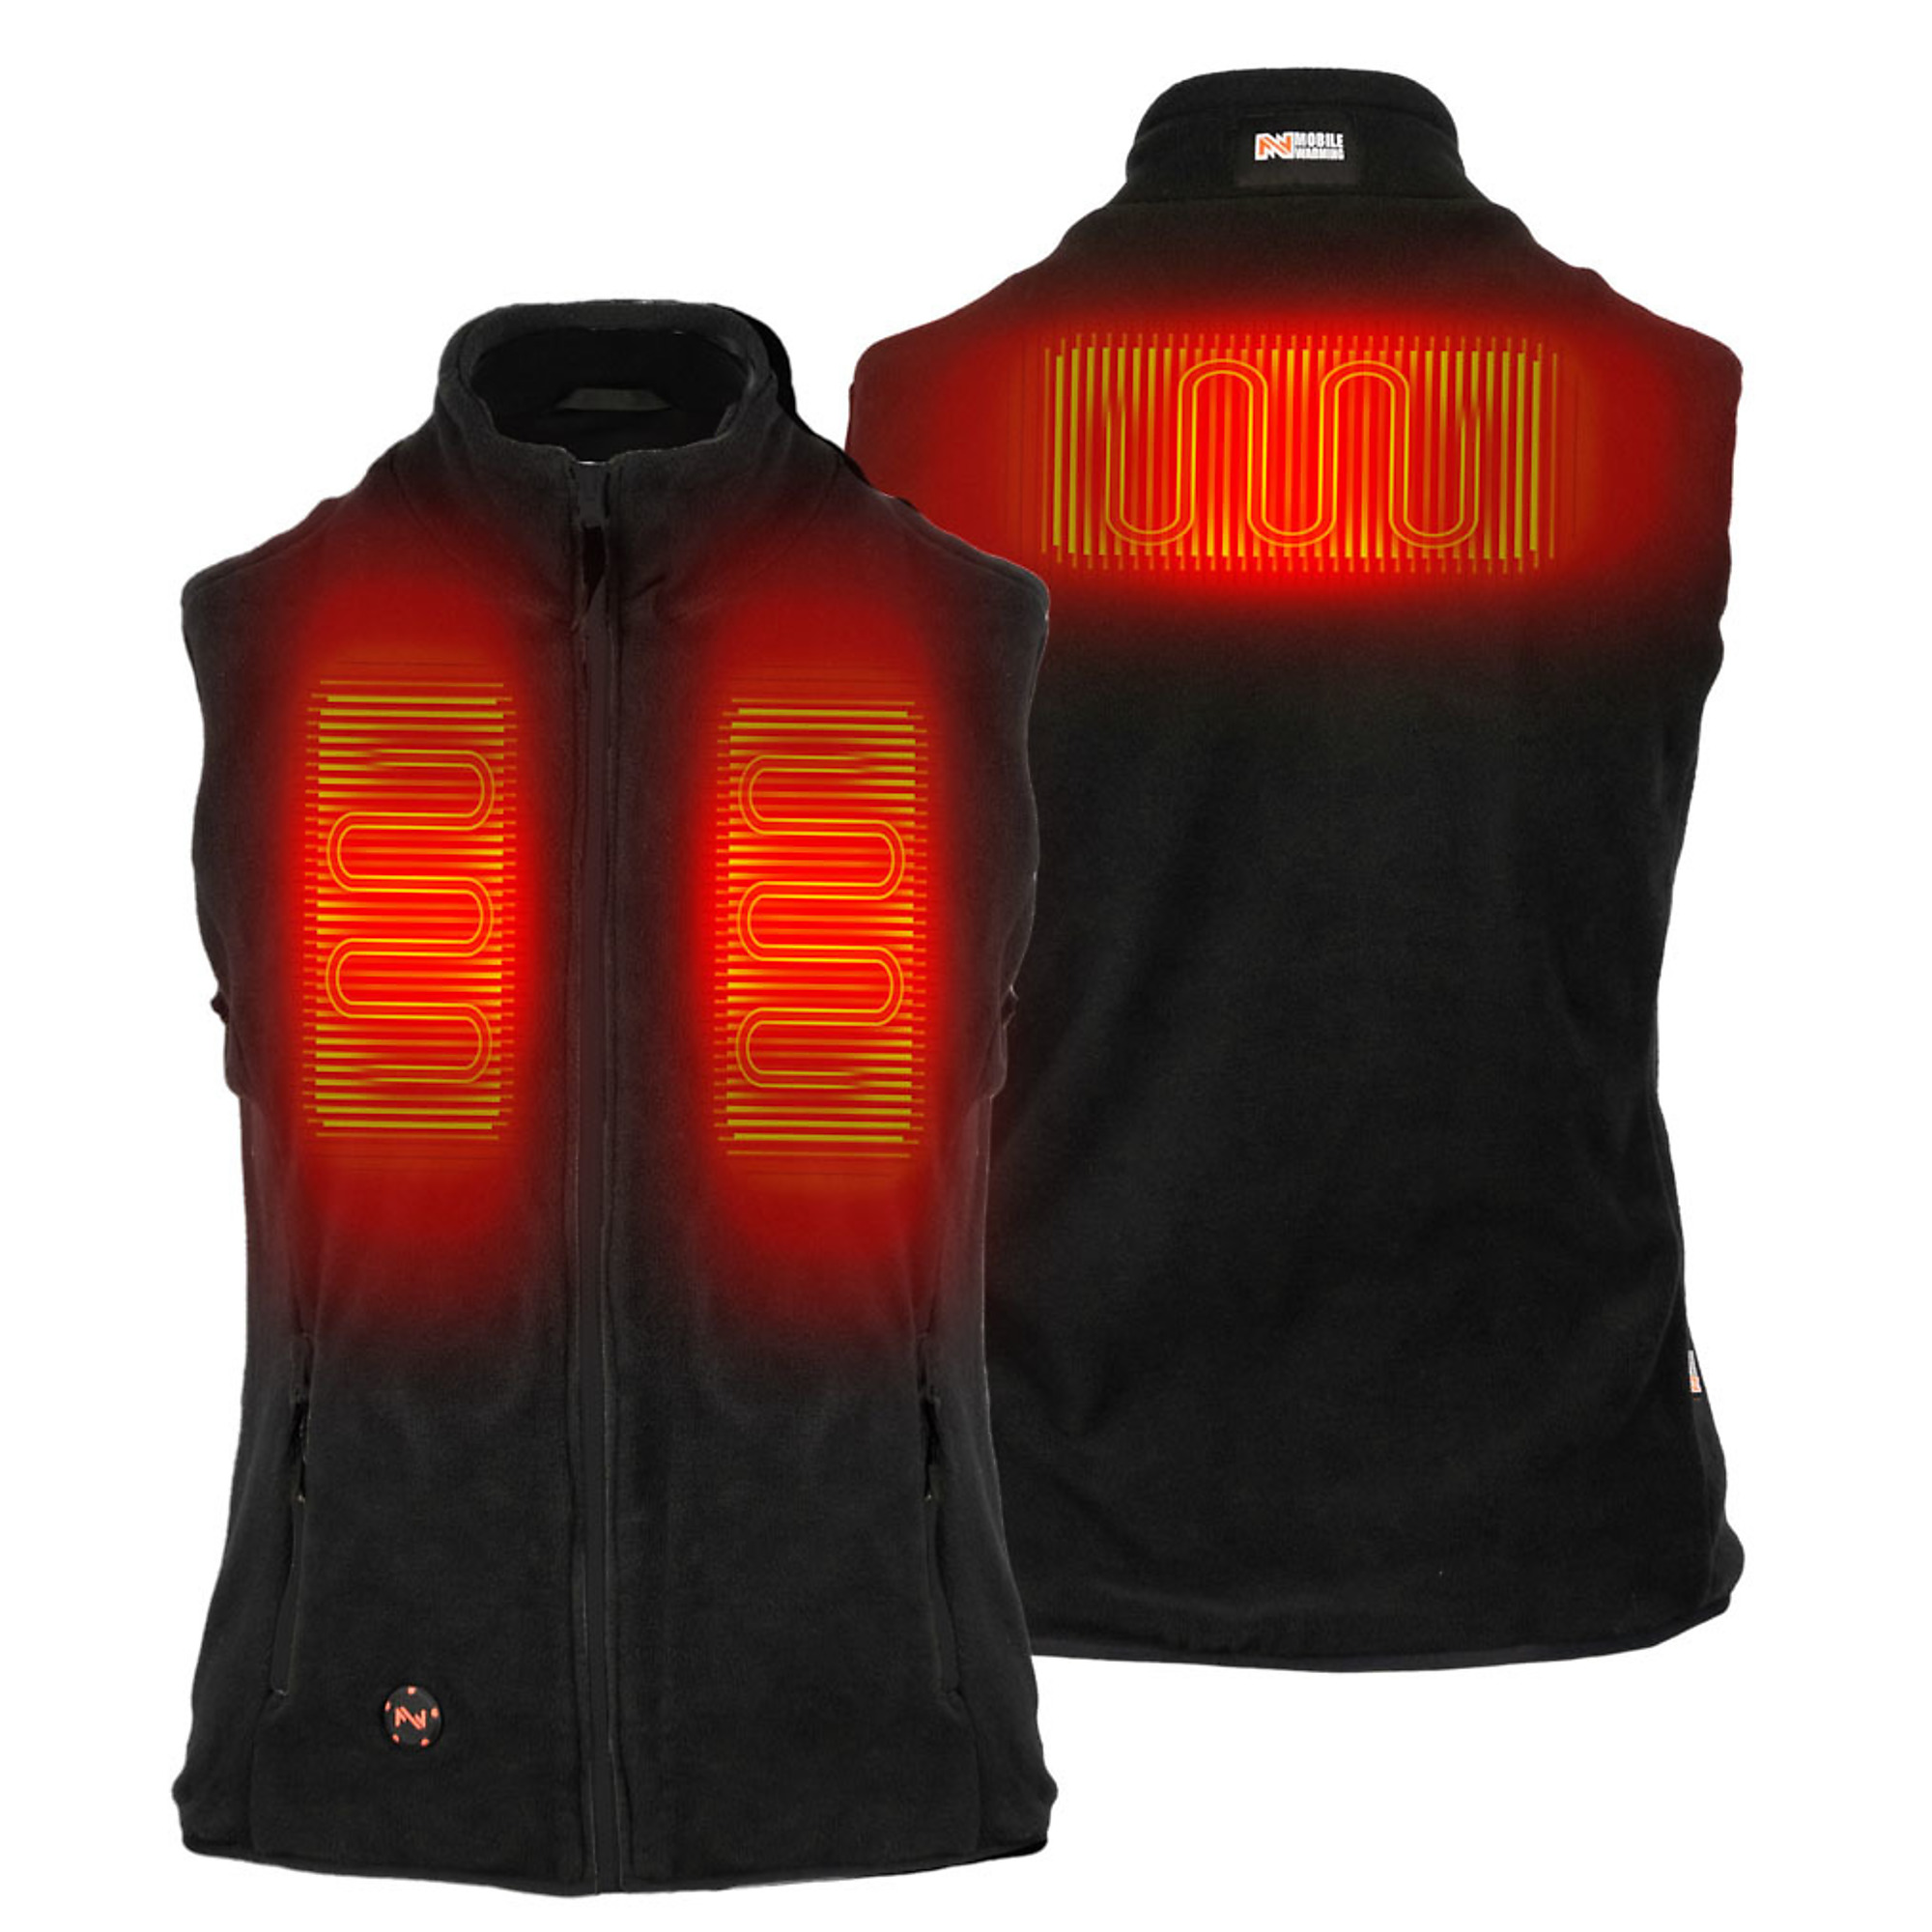 Fieldsheer, Women's Trek Heated Vest with 7.4v Battery, Size M, Color Black, Model MWWV18010322